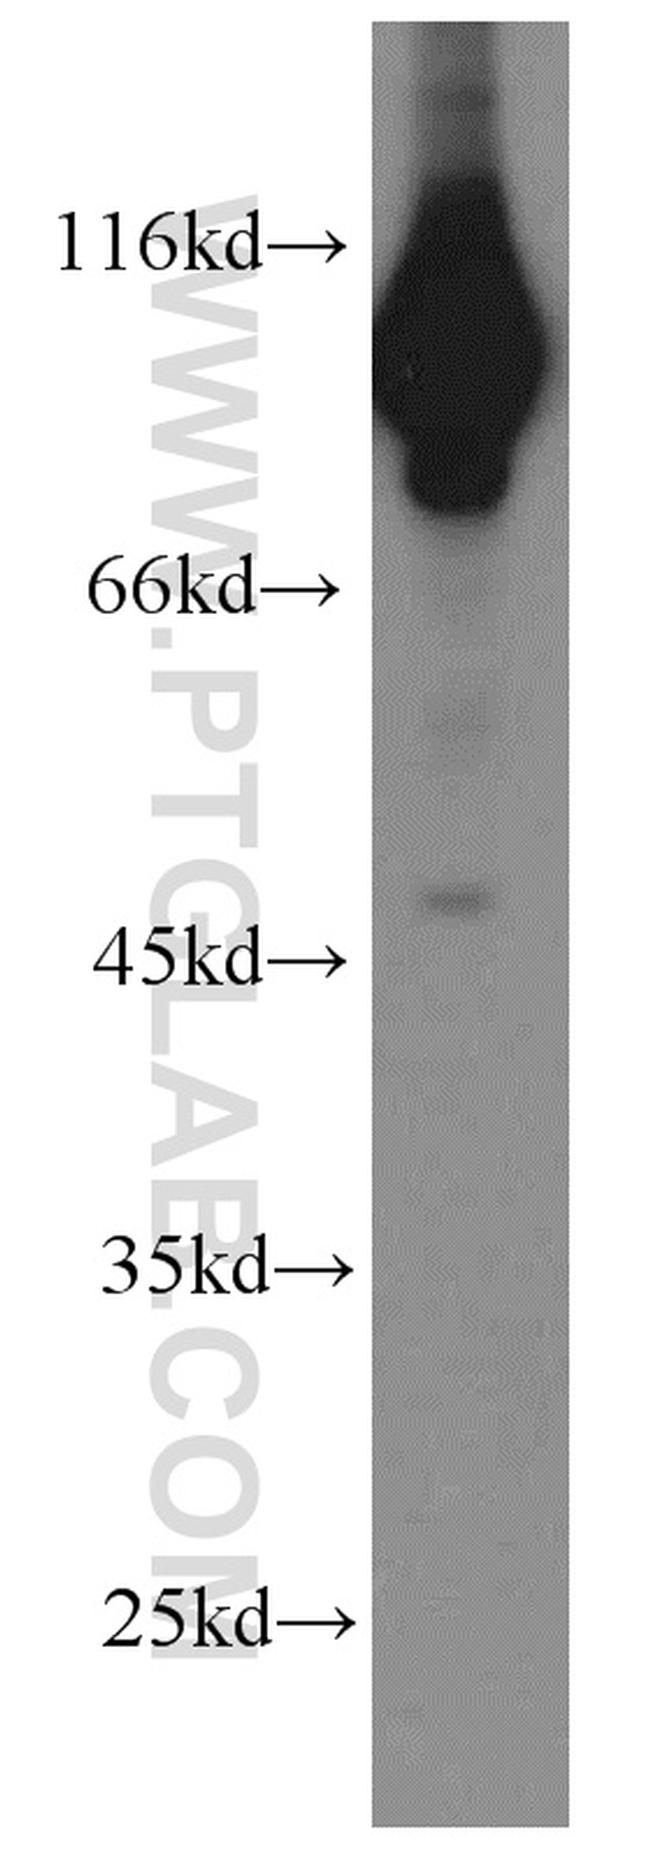 EEF2 Antibody in Western Blot (WB)